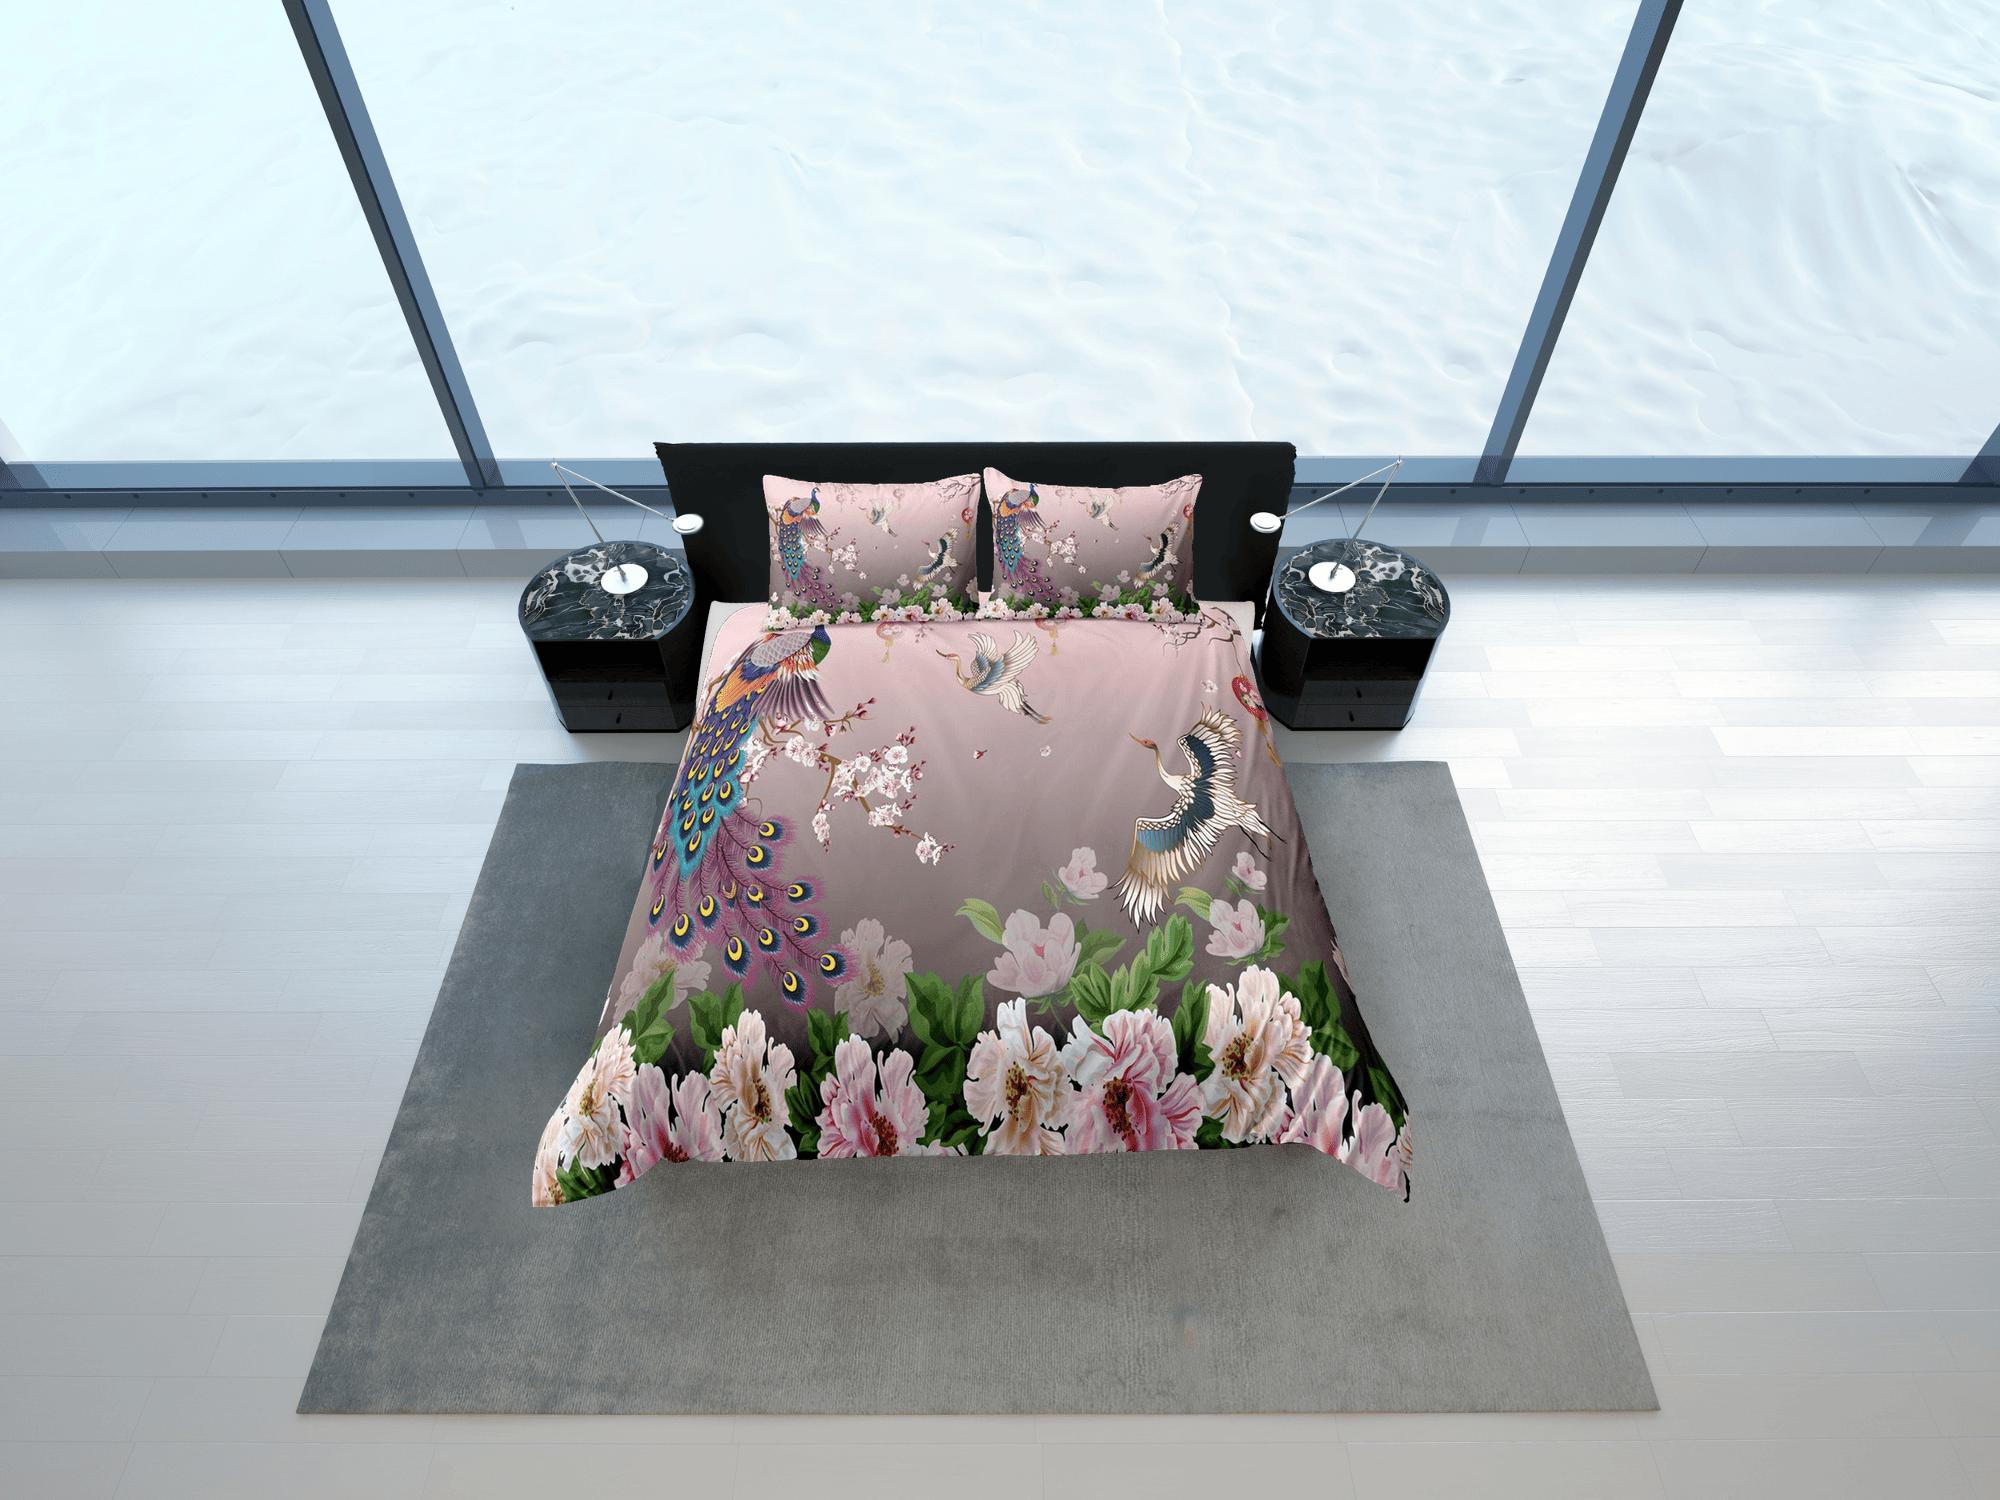 daintyduvet Pink peacock aesthetic bedding set full, crane bird, floral prints, luxury duvet cover queen, king, boho duvet, designer bedding, maximalist